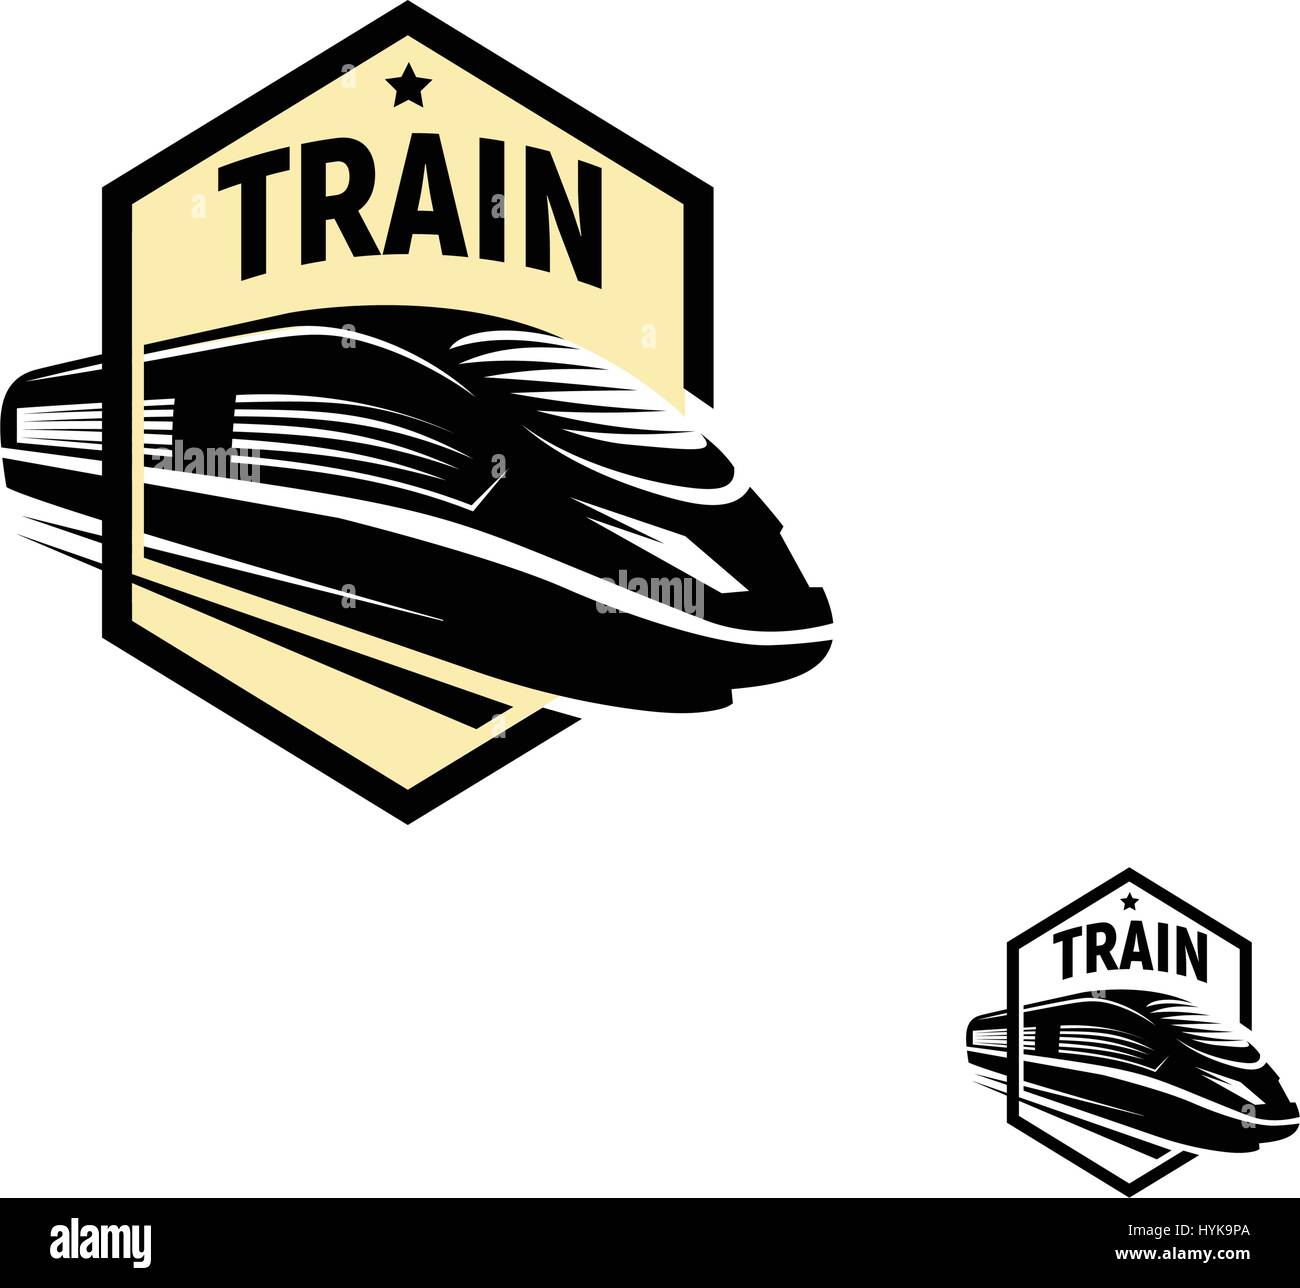 Abstract isolato di colore nero in treno in piazza logo su sfondo bianco, monocromatico moderno trasporto ferroviario logotipo, railroad elemento in stile di incisione illustrazione vettoriale Illustrazione Vettoriale